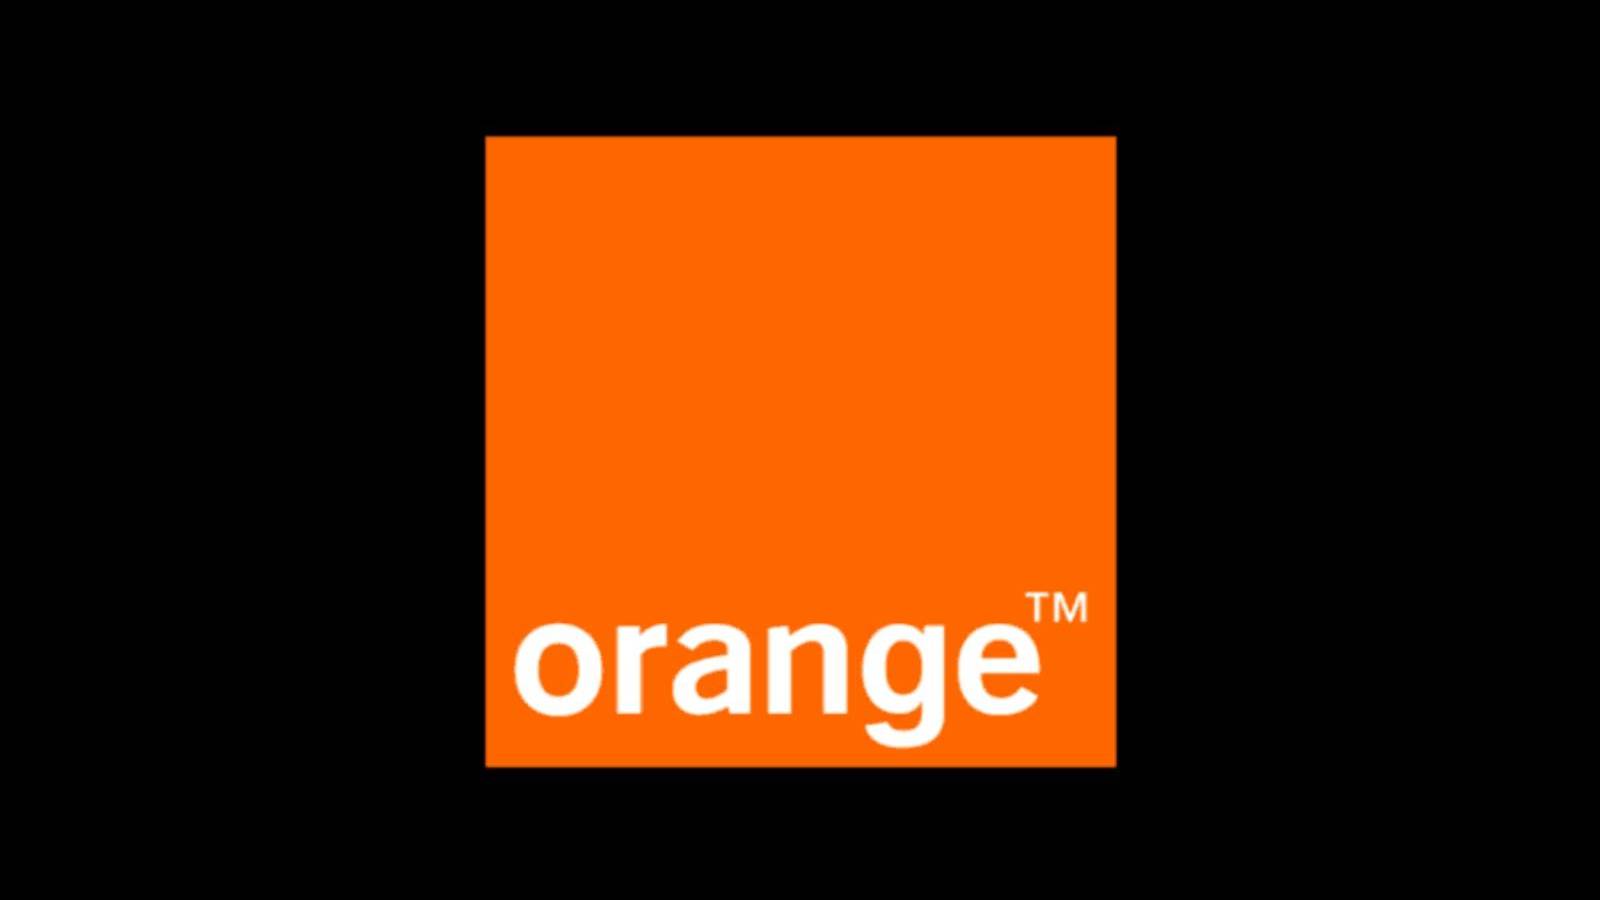 Oranges offizielle Ankündigung, wie viel Geld es rumänischen Kunden KOSTENLOS gibt